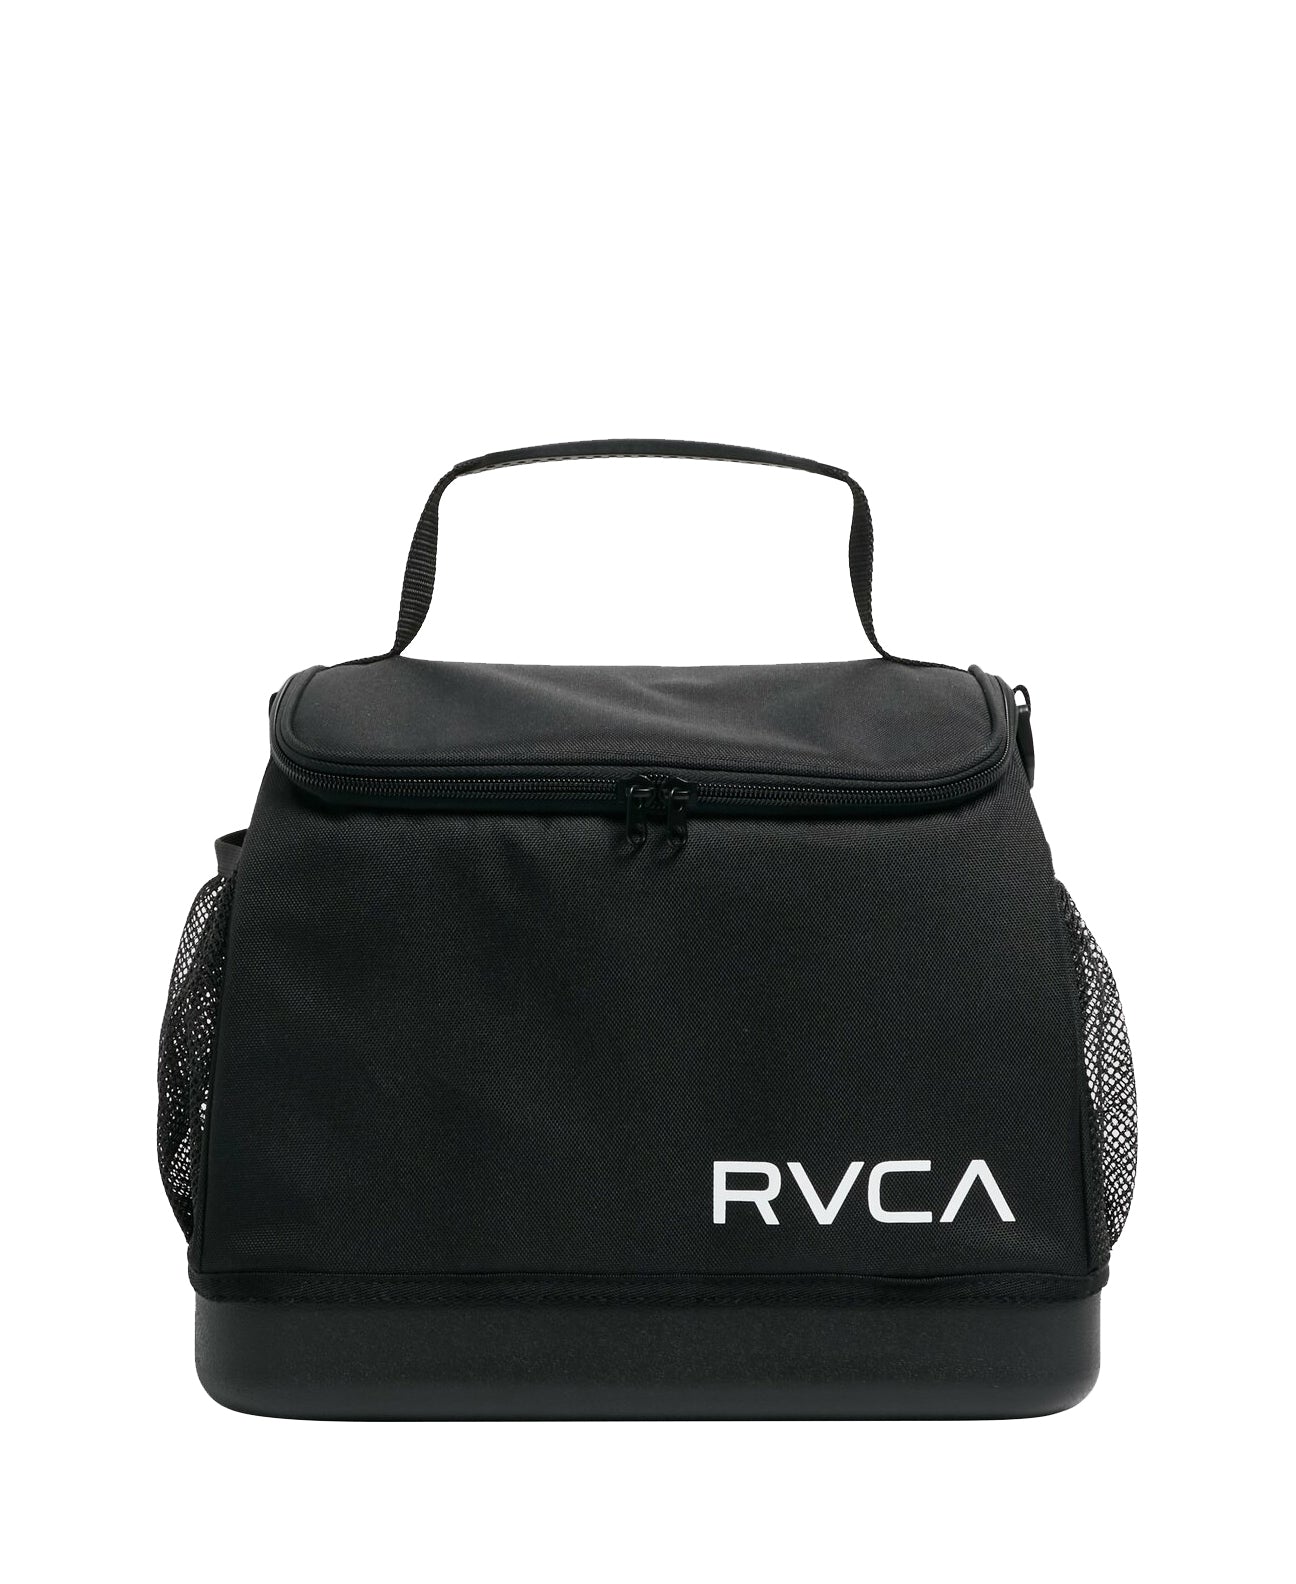 RVCA Cooler Bag BLK OS